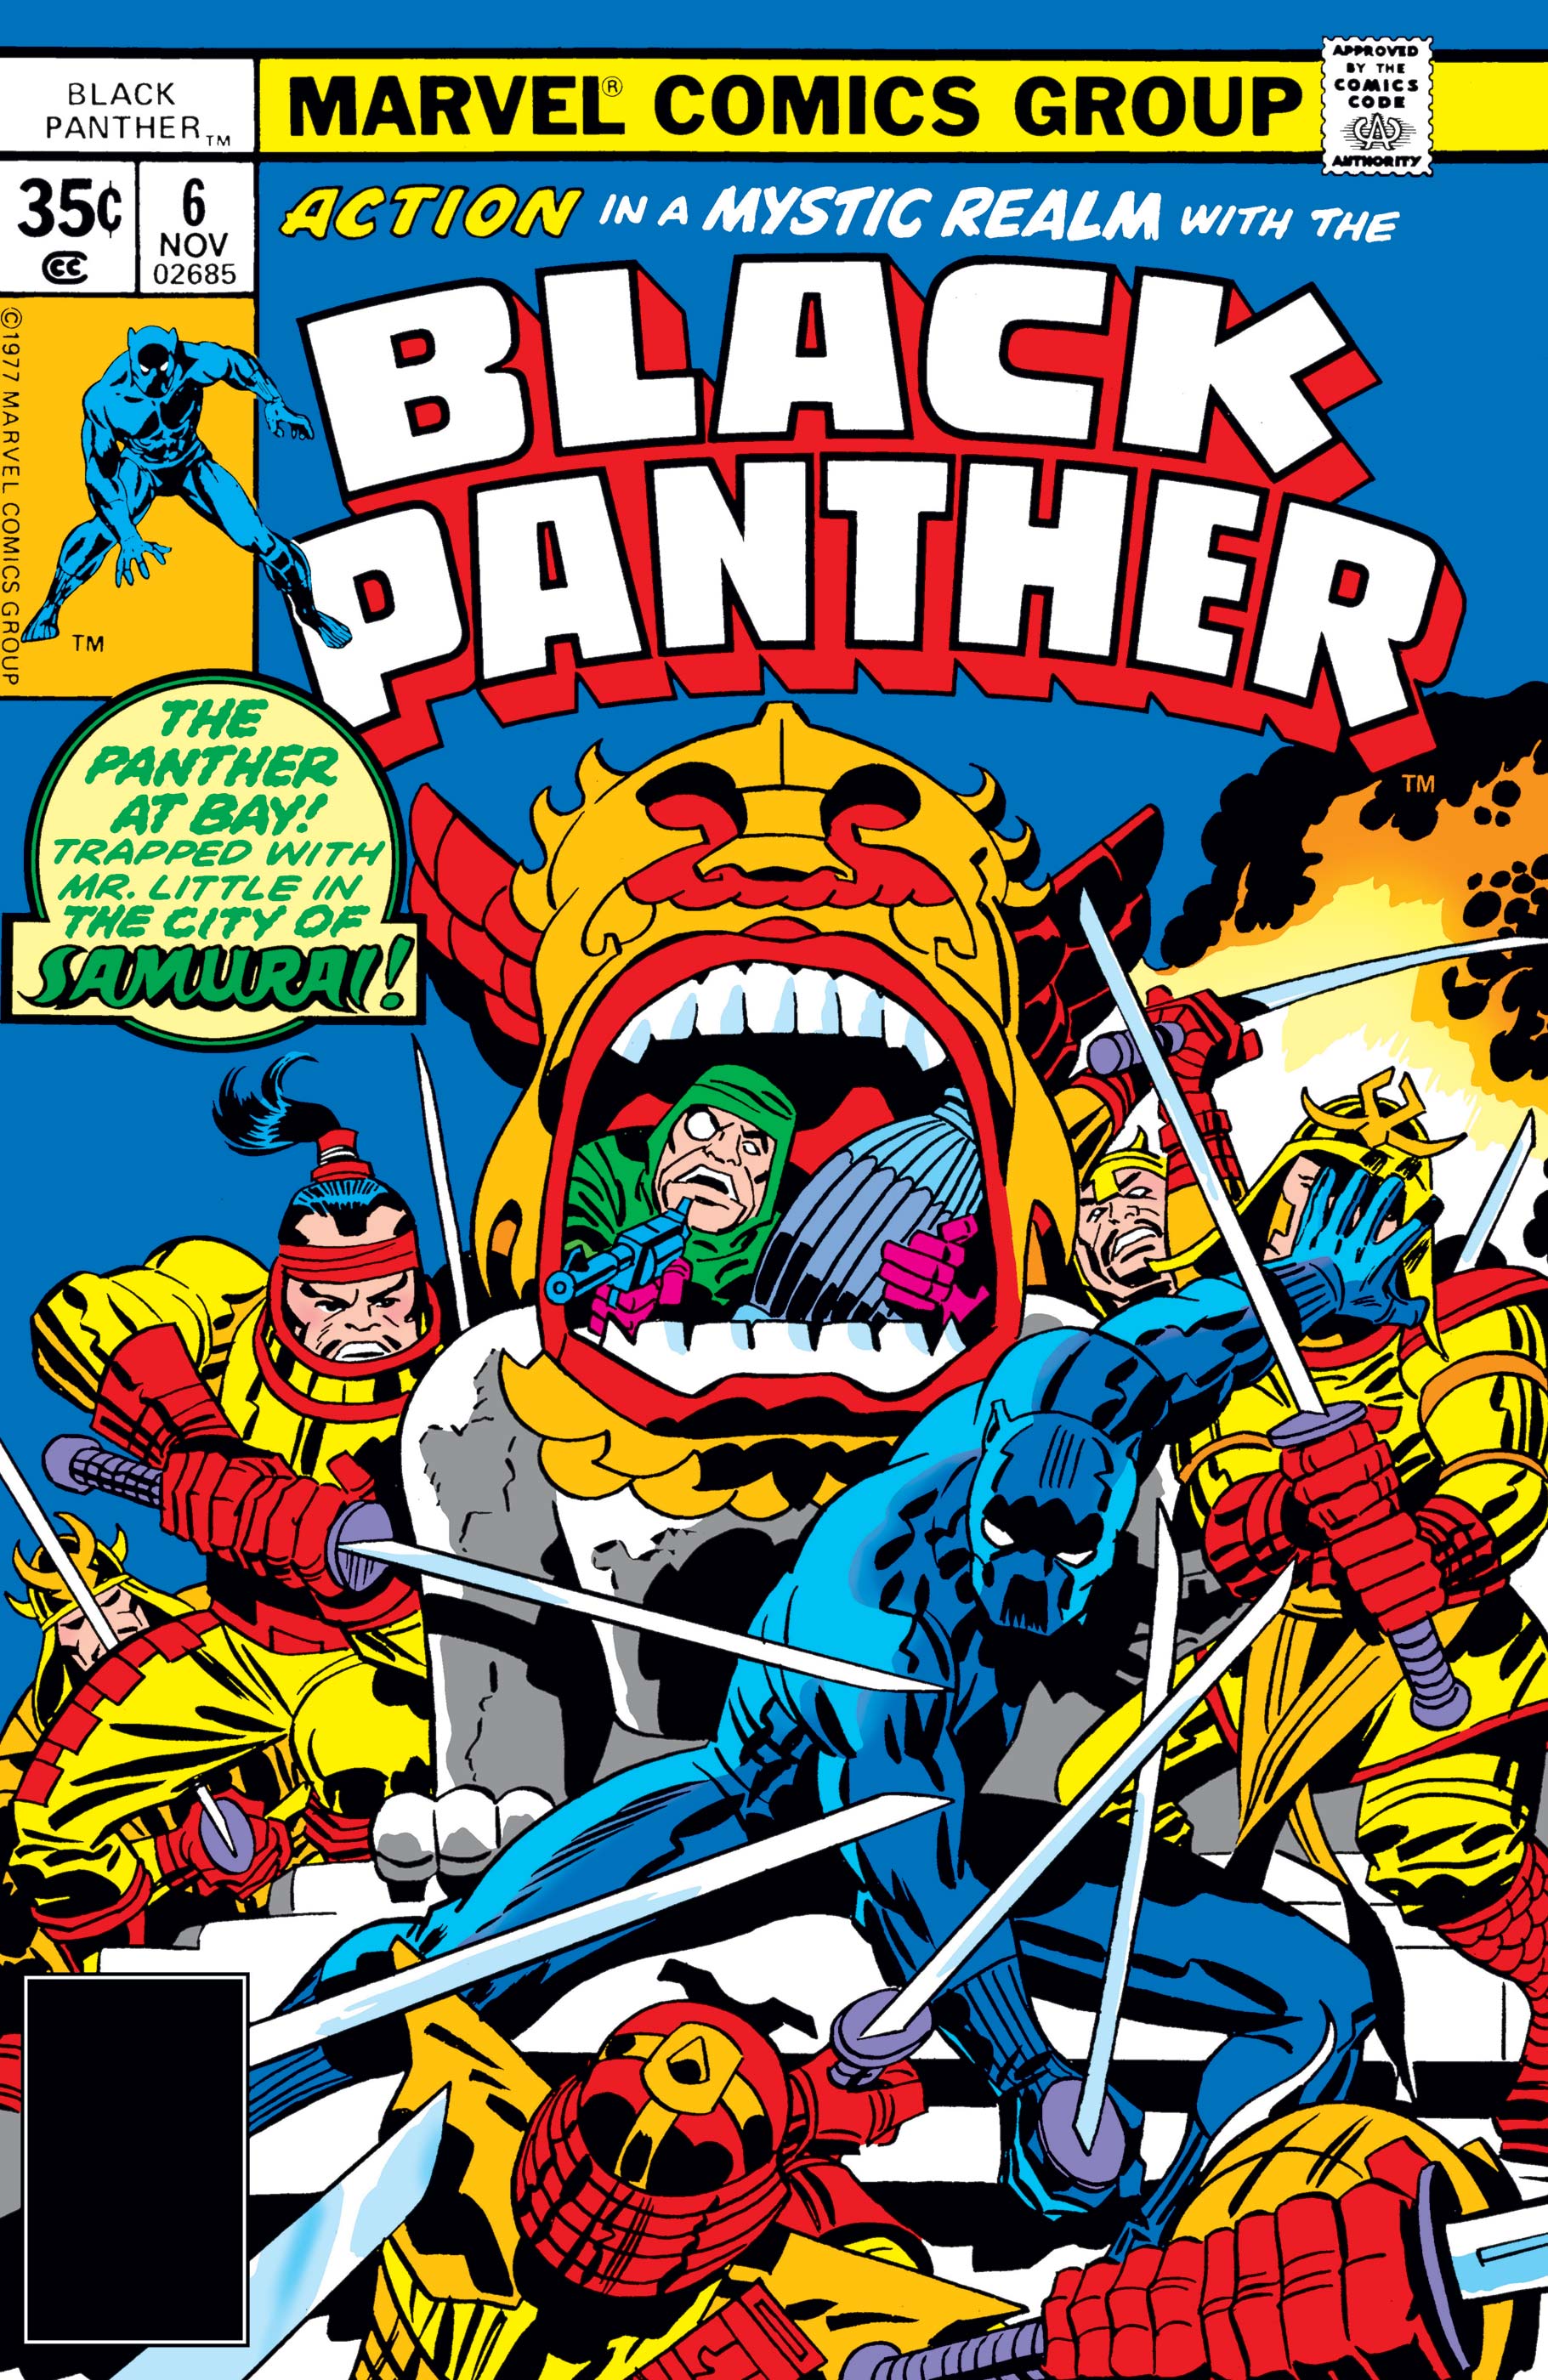 Black Panther (1977) #6